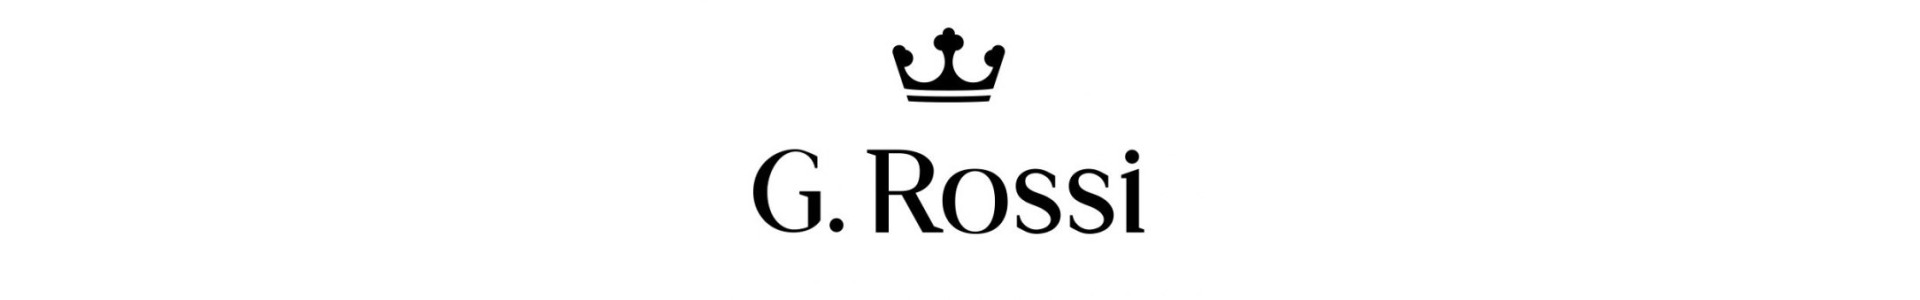 G. Rossi